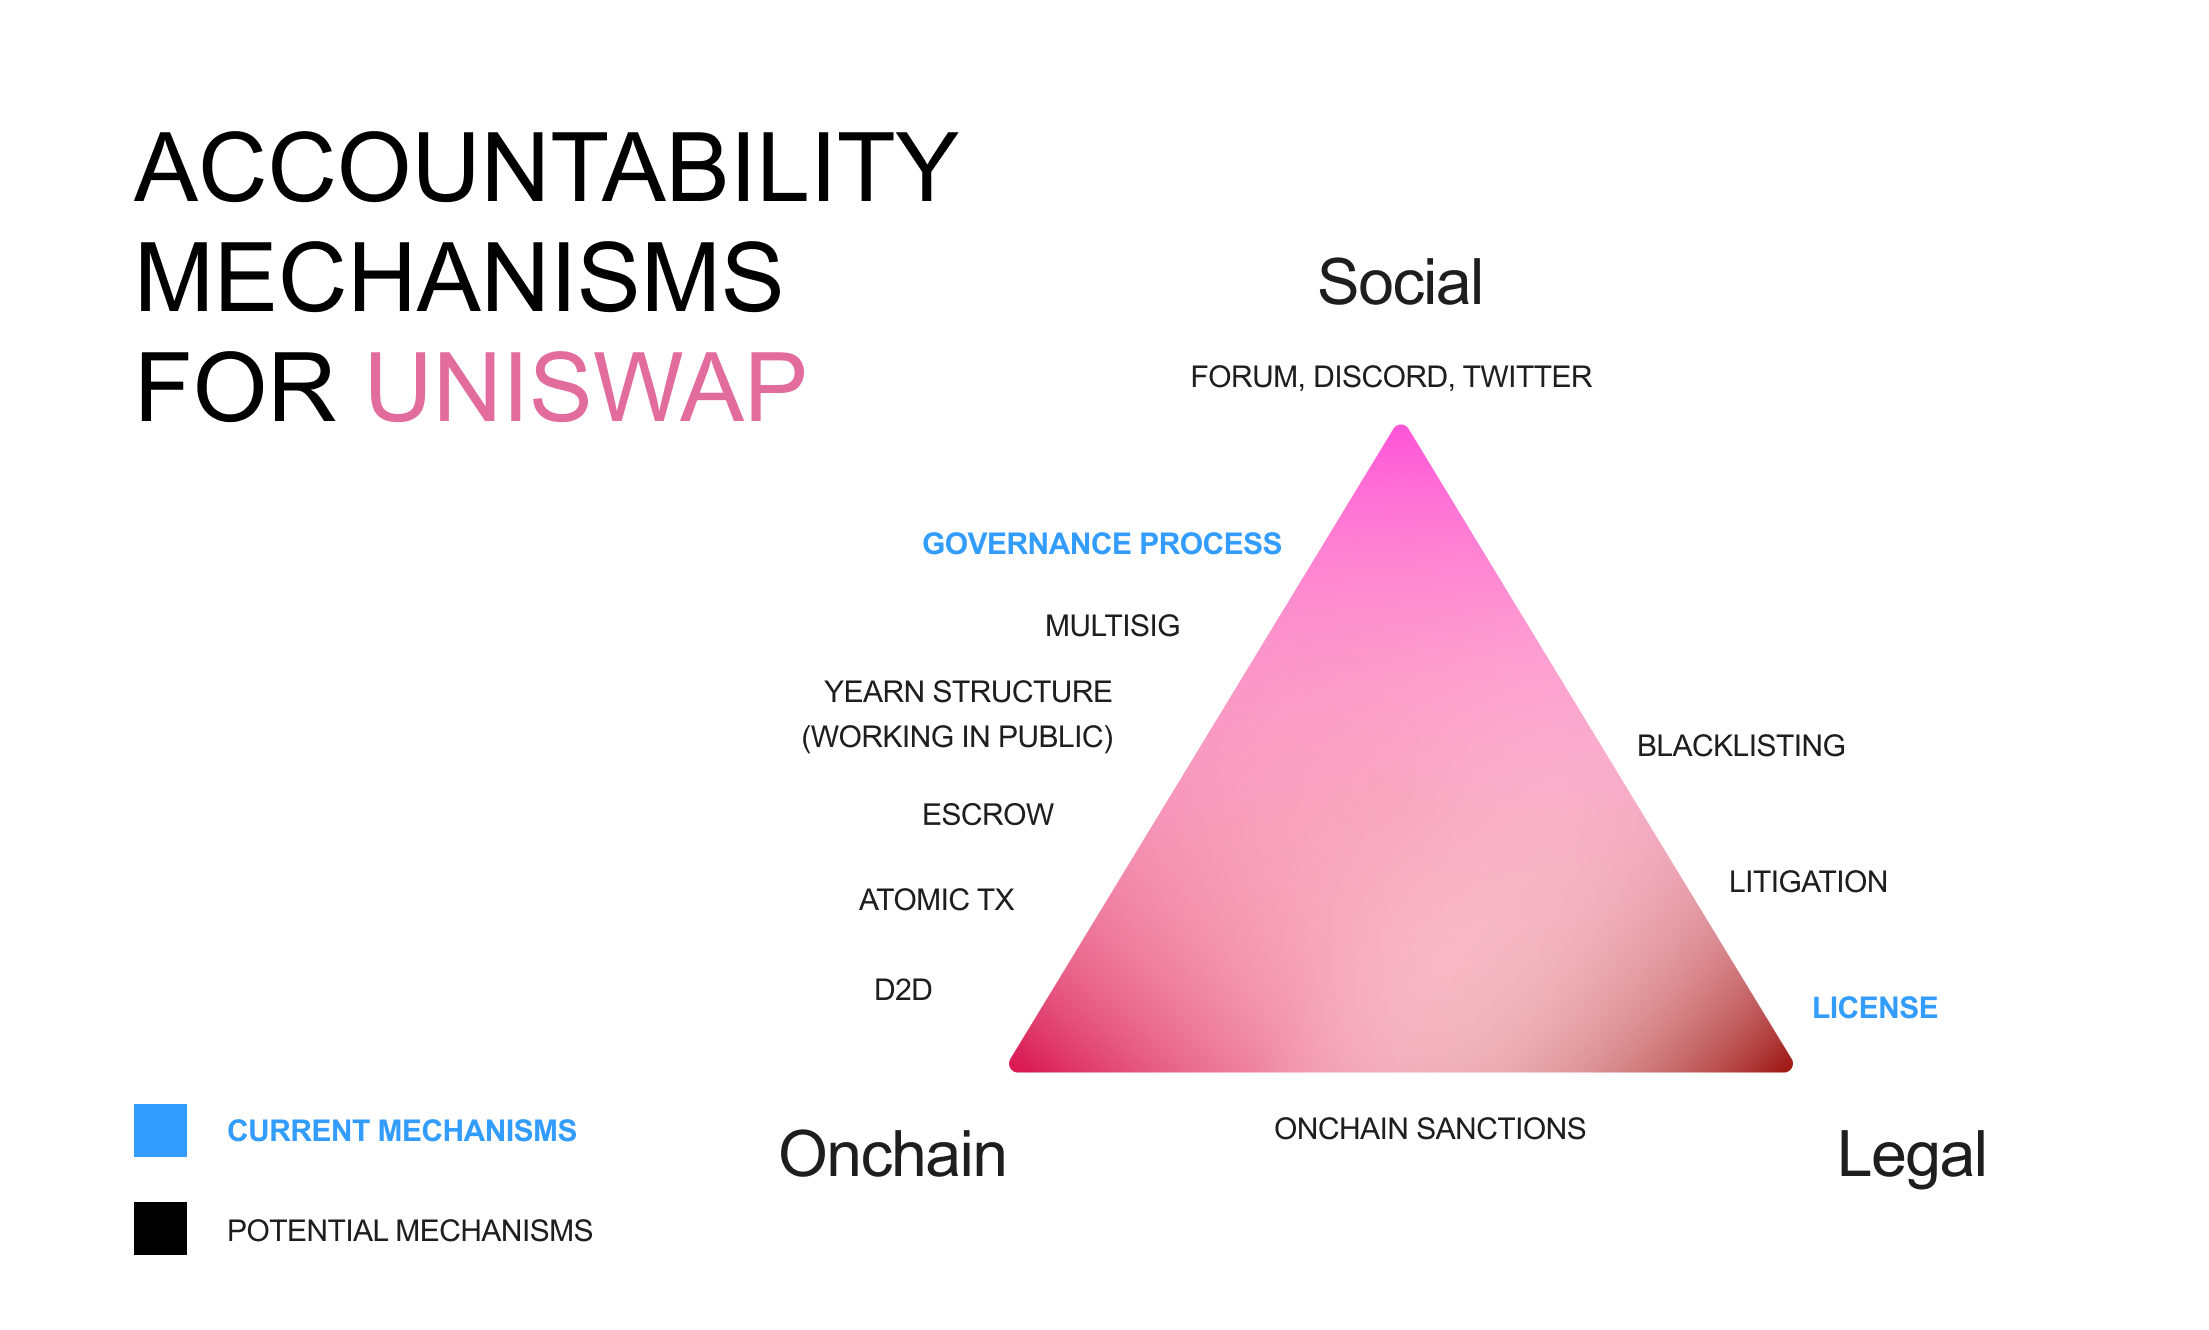 Accountability mechanisms available to Uniswap.